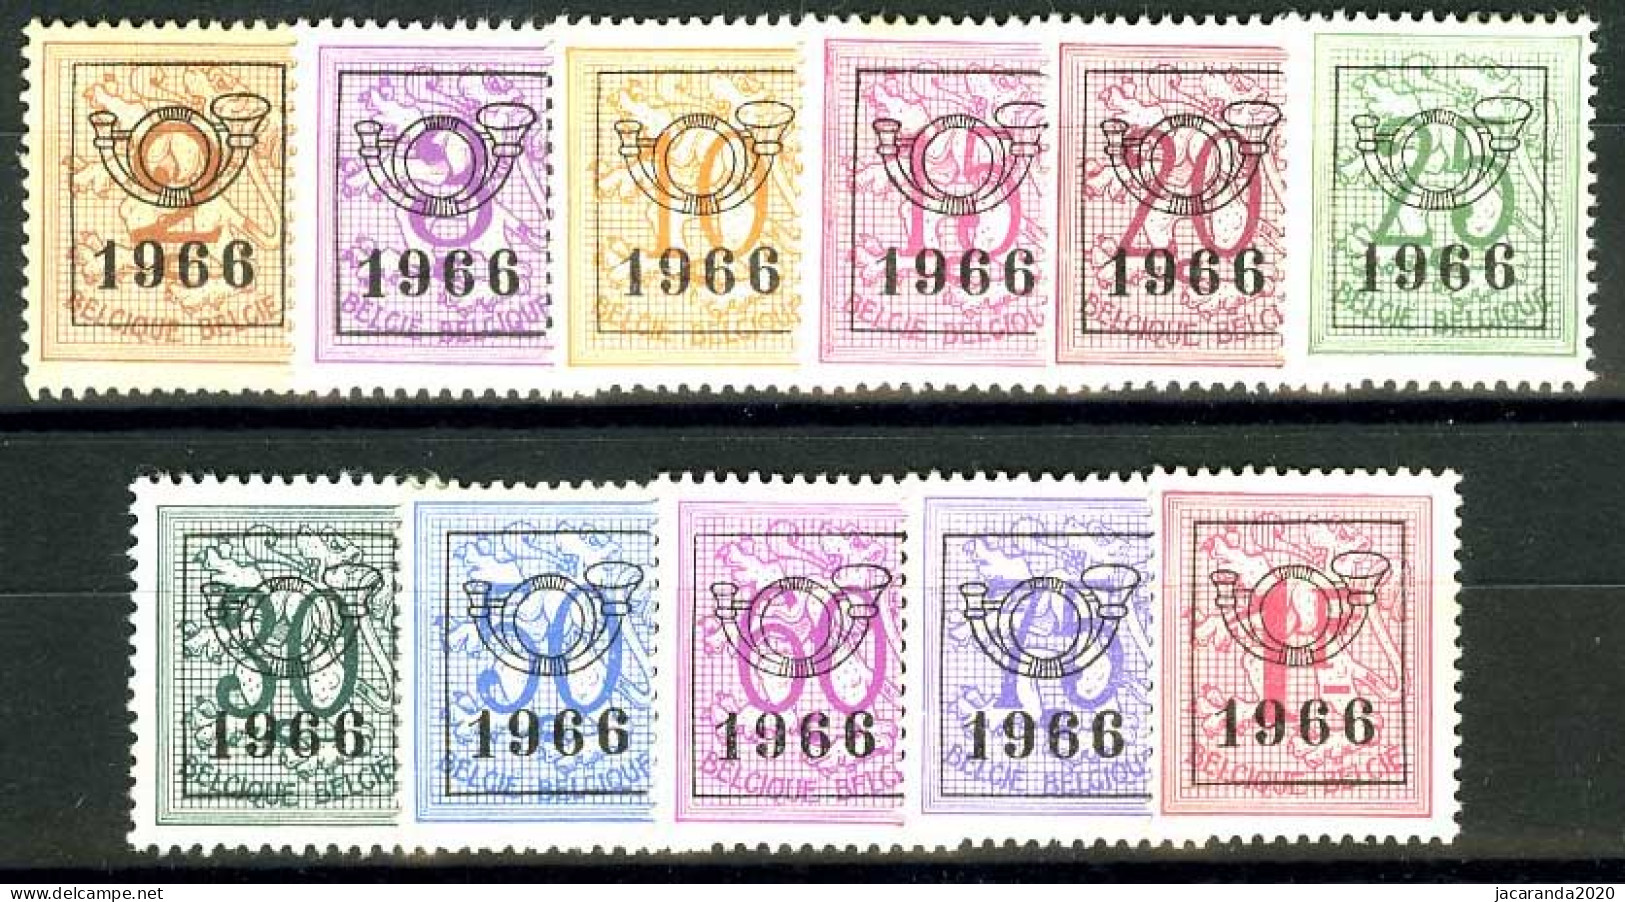 België PRE769/PRE779 ** - 1966 - Cijfer Op Heraldieke Leeuw - Chiffre Sur Lion Héraldique - Preo Reeks 59 - 11w. - Typos 1951-80 (Chiffre Sur Lion)